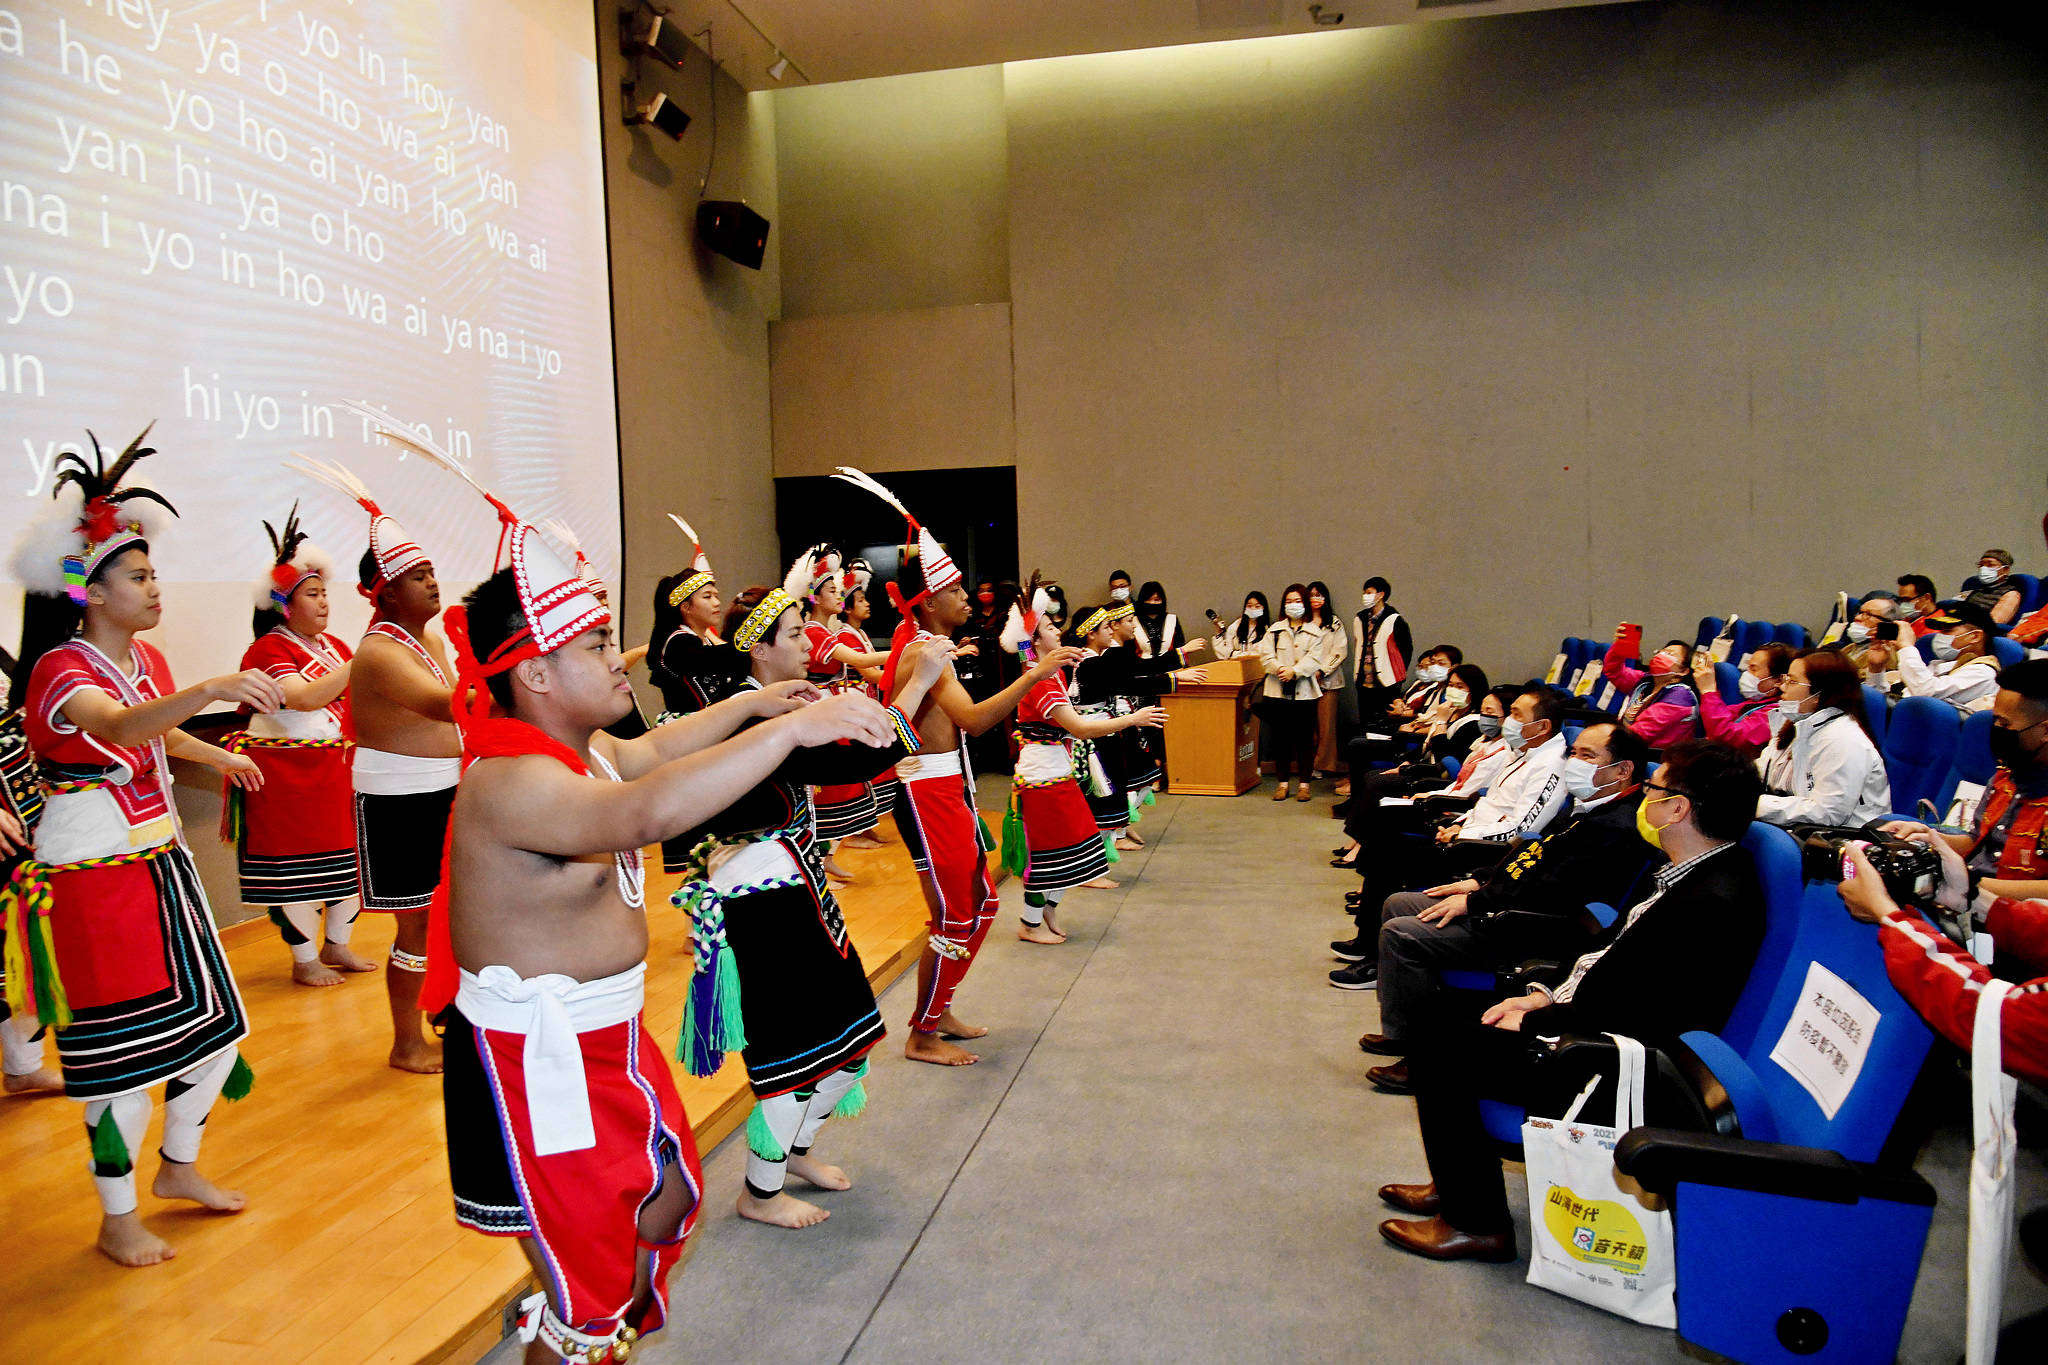 會議由樹林高級中學原住民藝能班的傳統舞蹈開場。